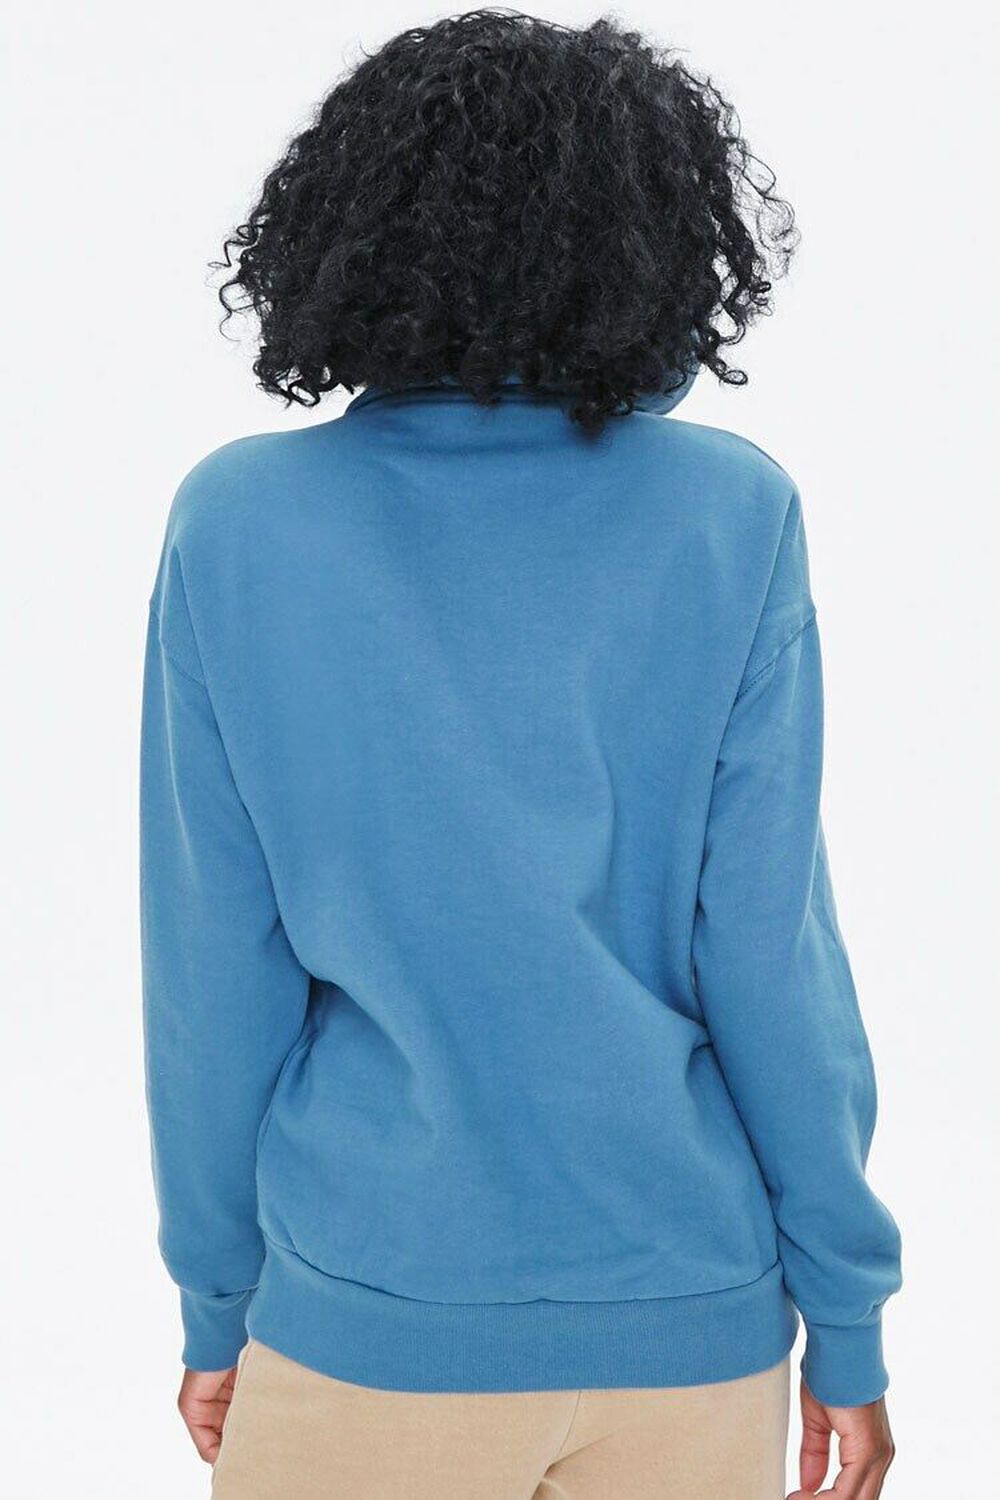 BLUE Half-Zip Pullover & Face Mask Set, image 3